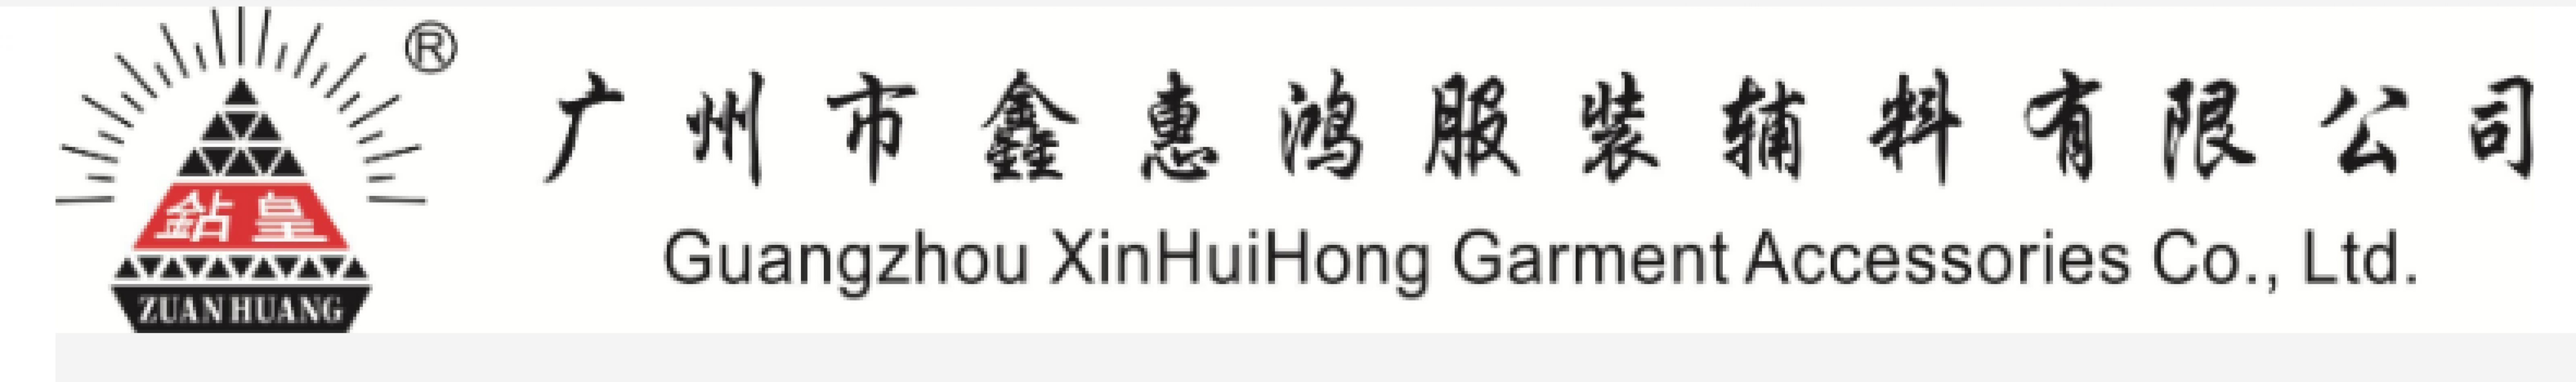 GUANG ZHOU XINHUI HONG GARMENT ACCESSORIES CO,.LTD